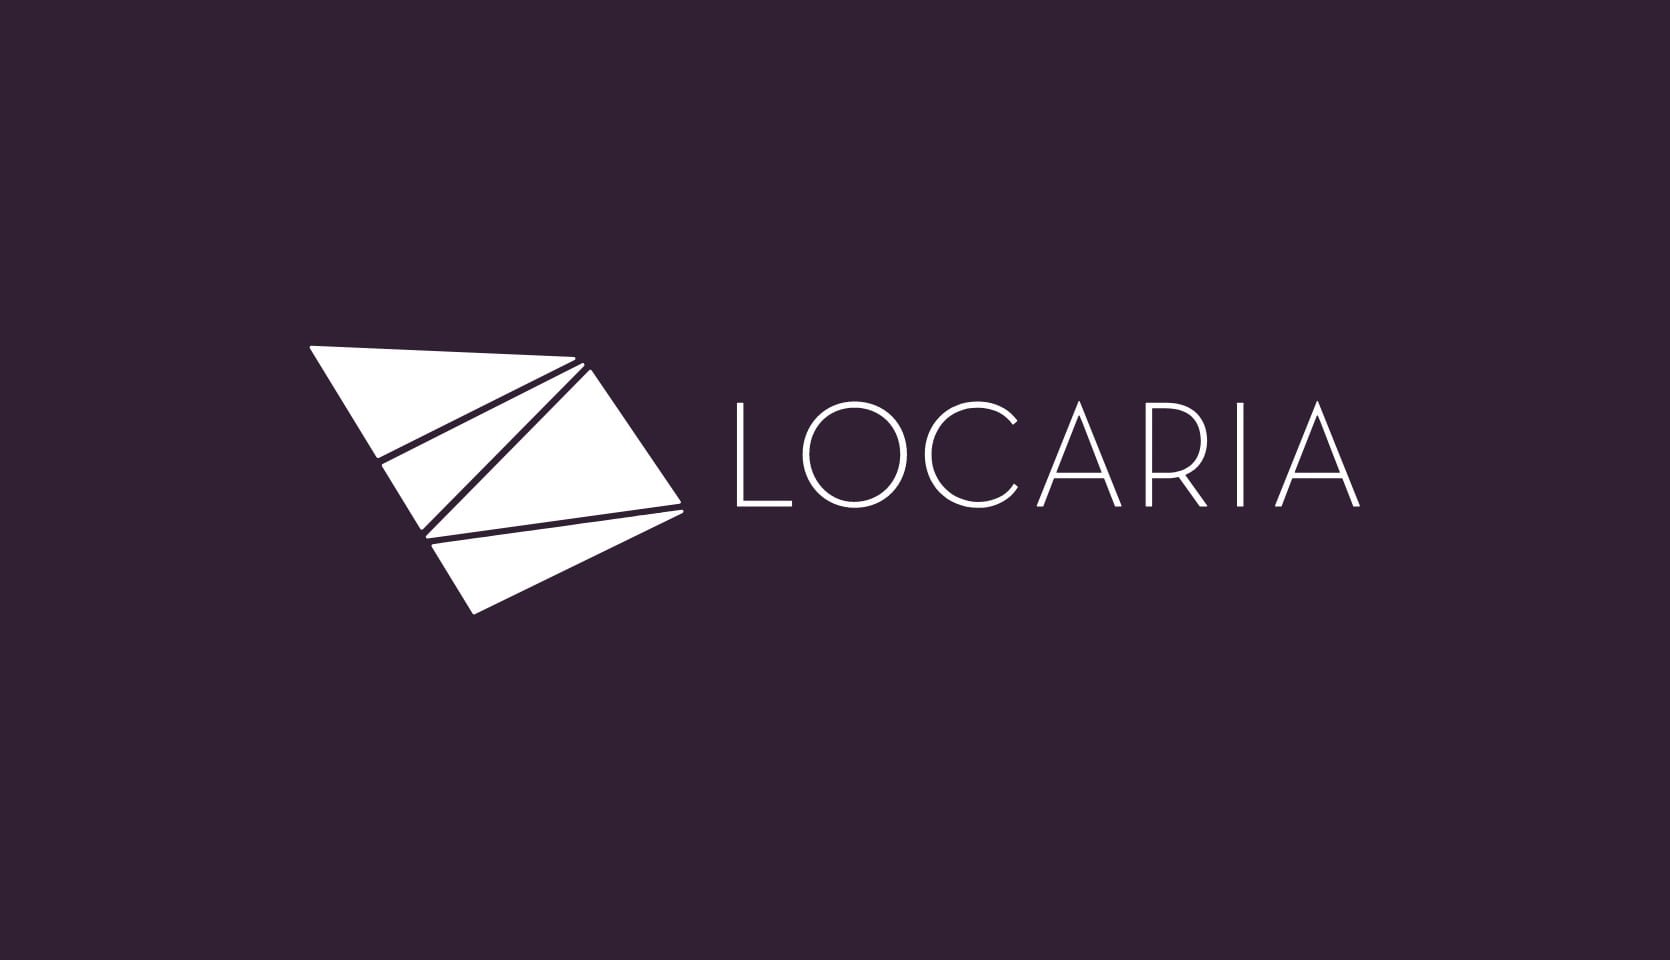 Locaria brandmark